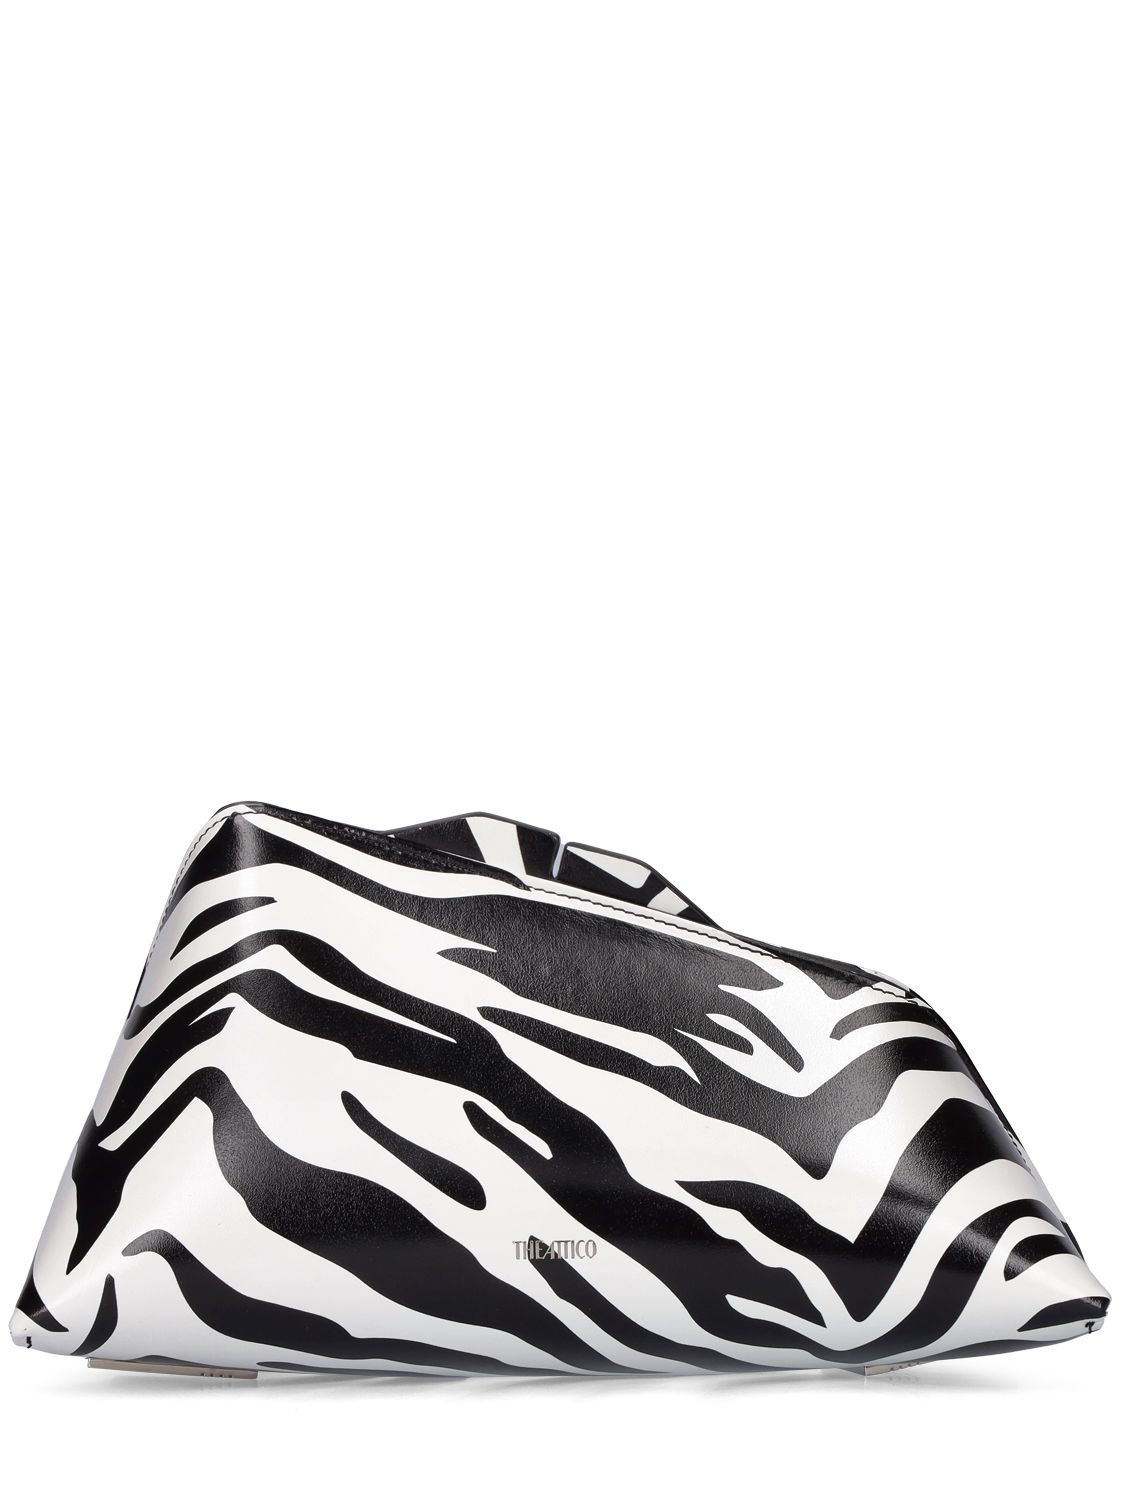 Pochette 8.30 Pm In Pelle Stampa Zebra - THE ATTICO - Modalova